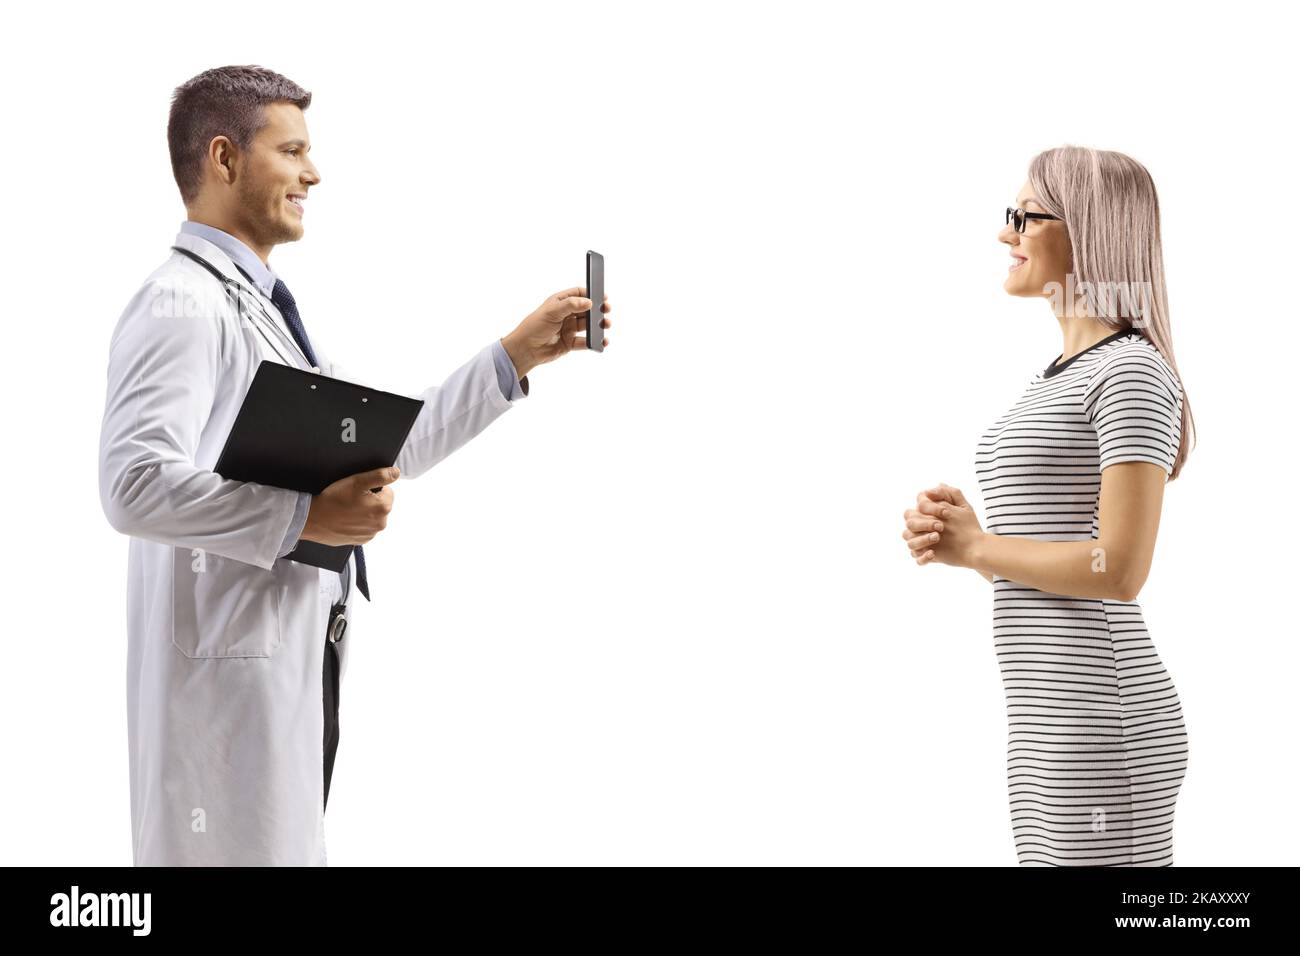 Médecin montrant un téléphone portable à une jeune patiente isolée sur fond blanc Banque D'Images